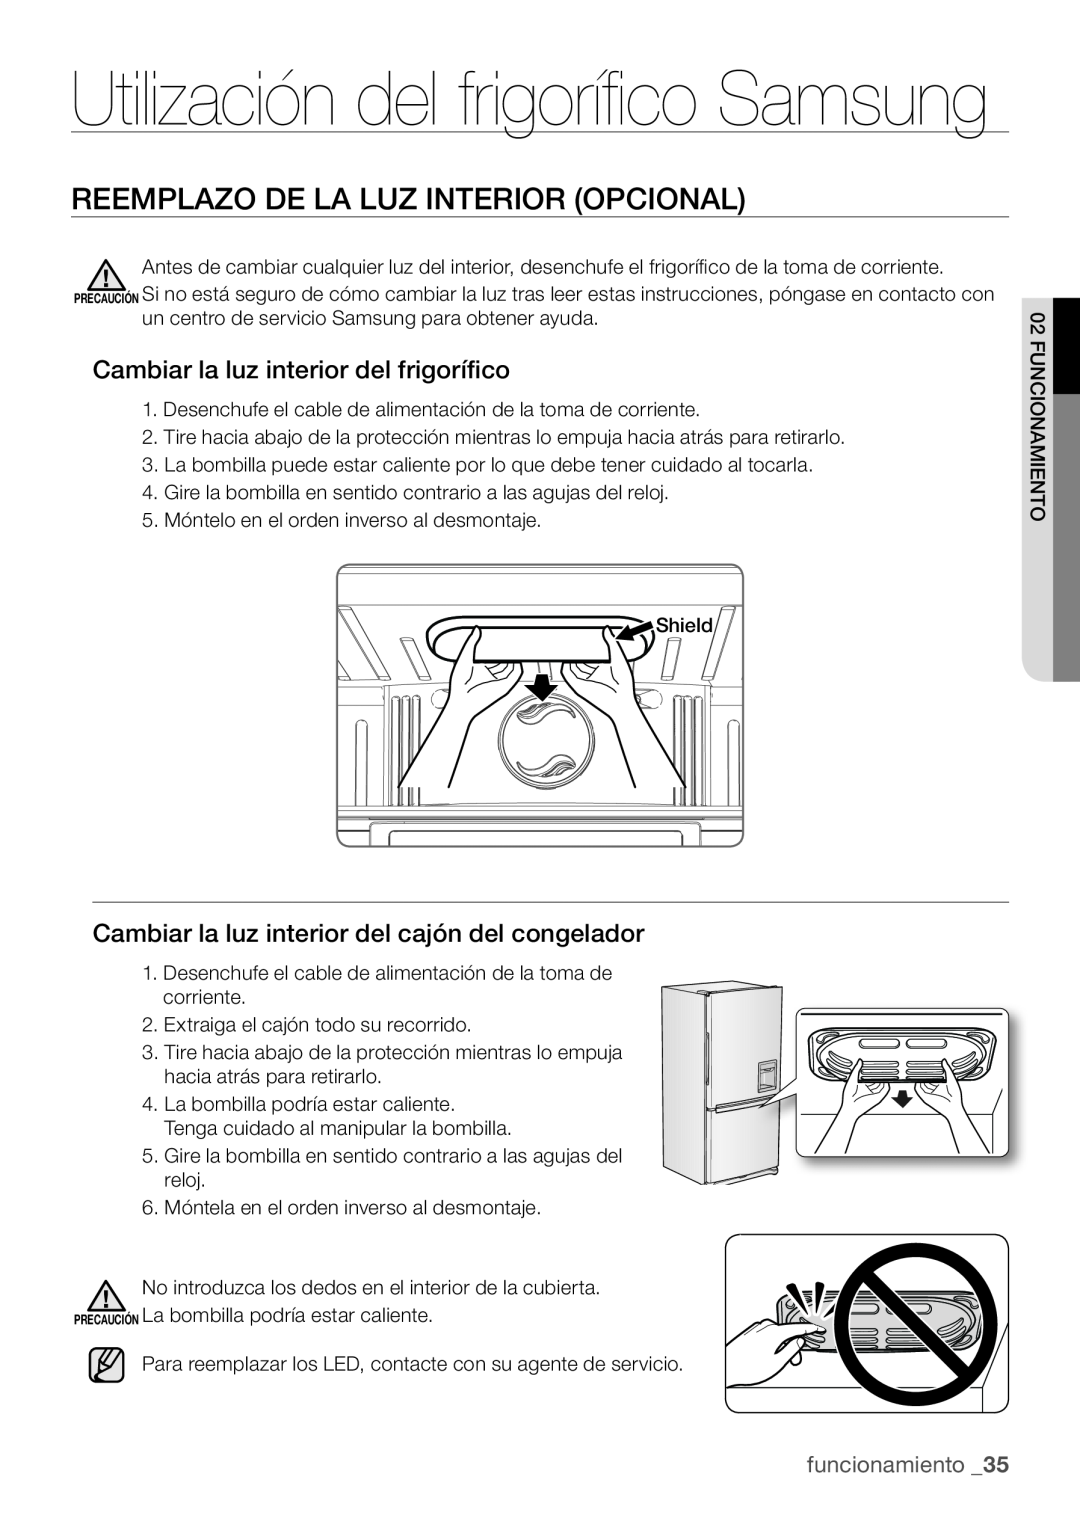 Samsung RL62ZBSH1/XES manual Utilización del frigorífico Samsung, Reemplazo De La Luz Interior Opcional, funcionamiento 